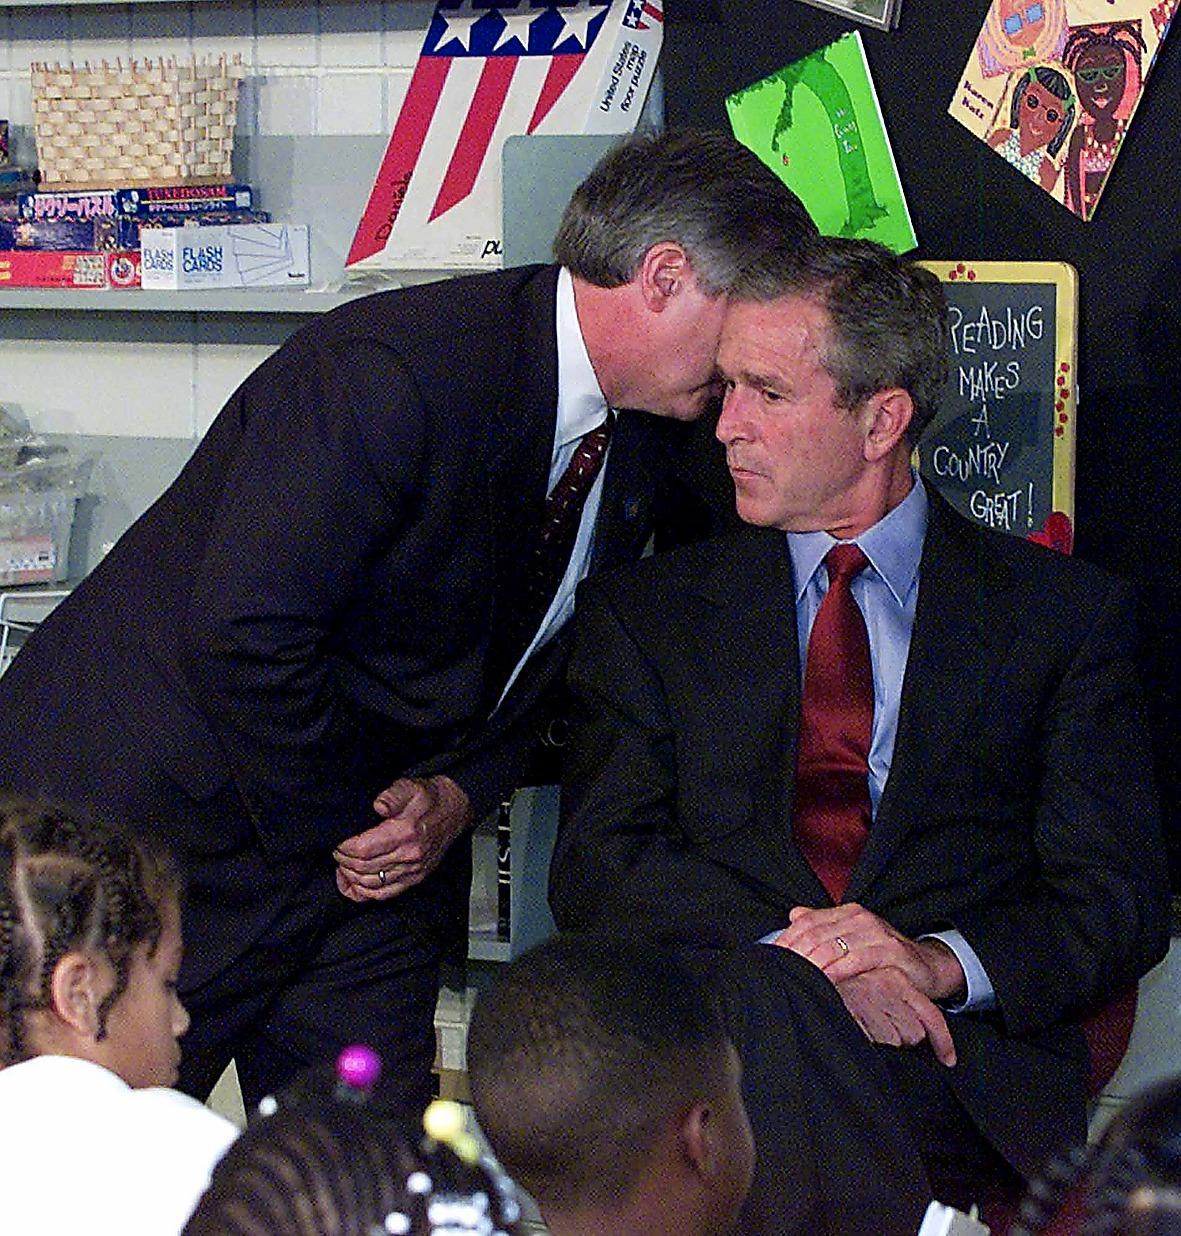 FÅR BESKEDET President George W Bush befinner sig på en skola i Florida när han får beskedet om terrorattackerna.